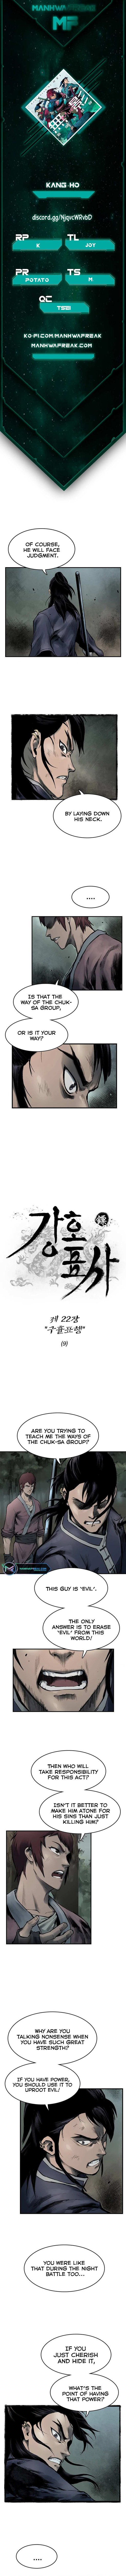 Kang Ho - Page 3